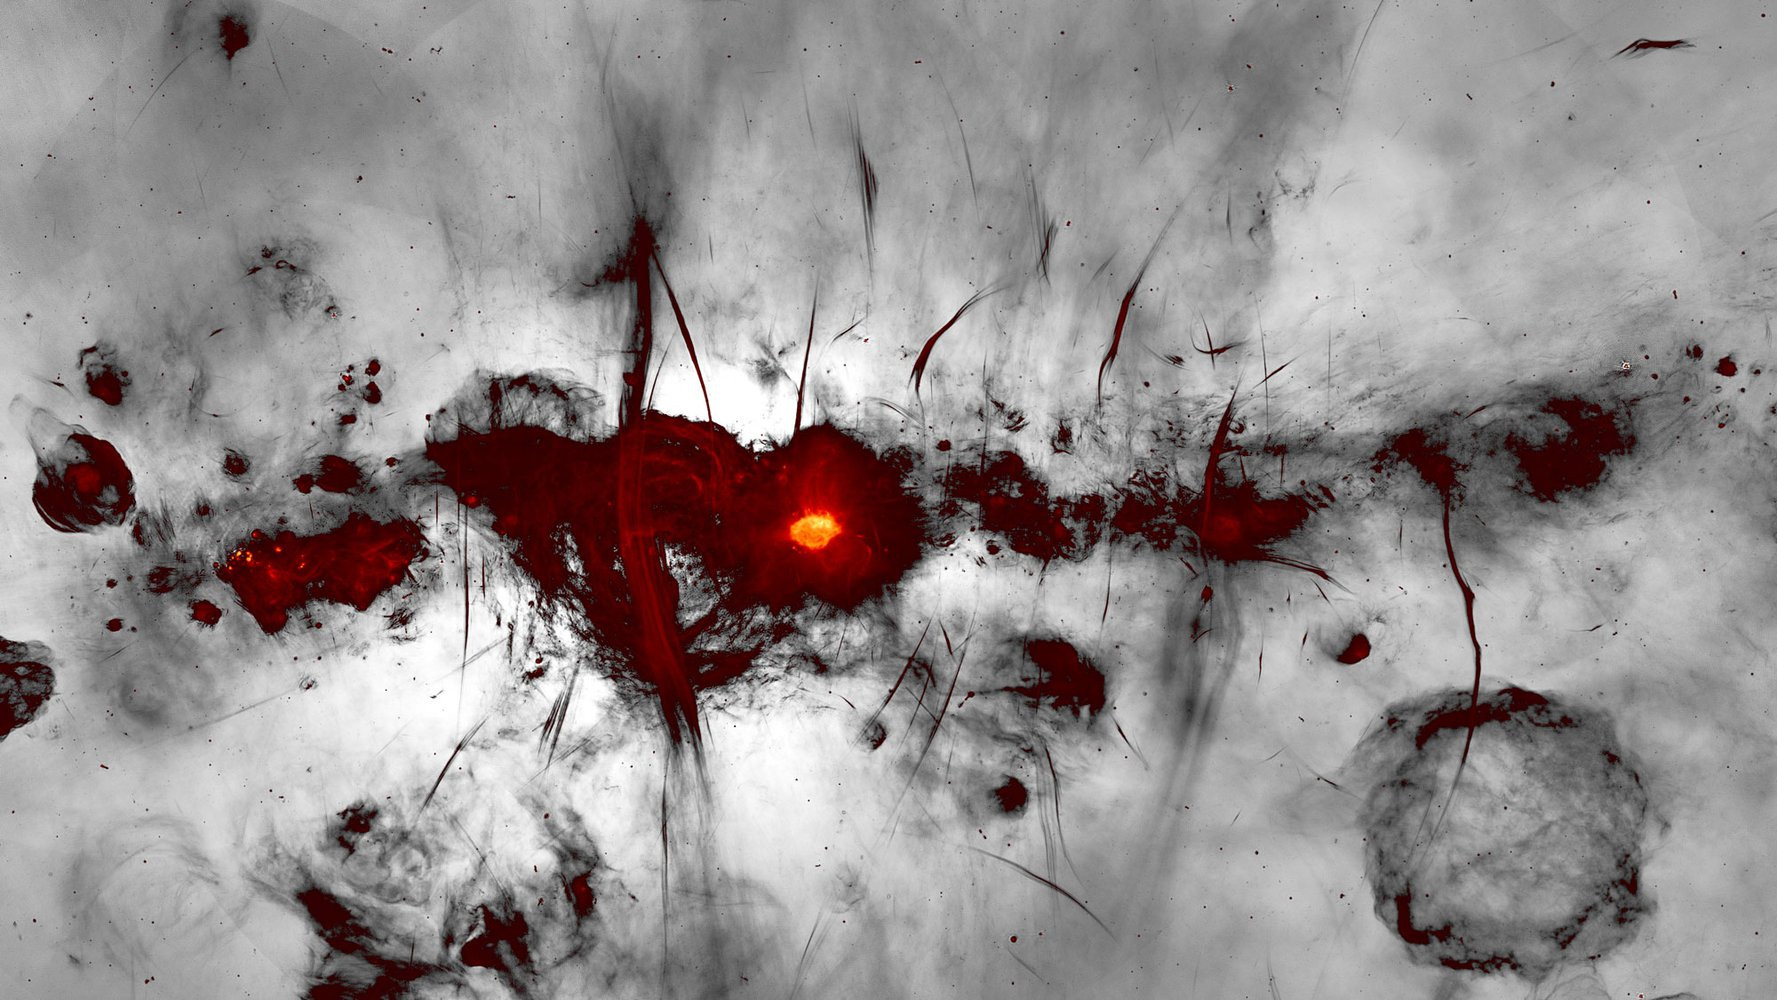 Астрономи зробили неймовірні світлини Чумацького шляху з чорною дірою у центрі - зображення